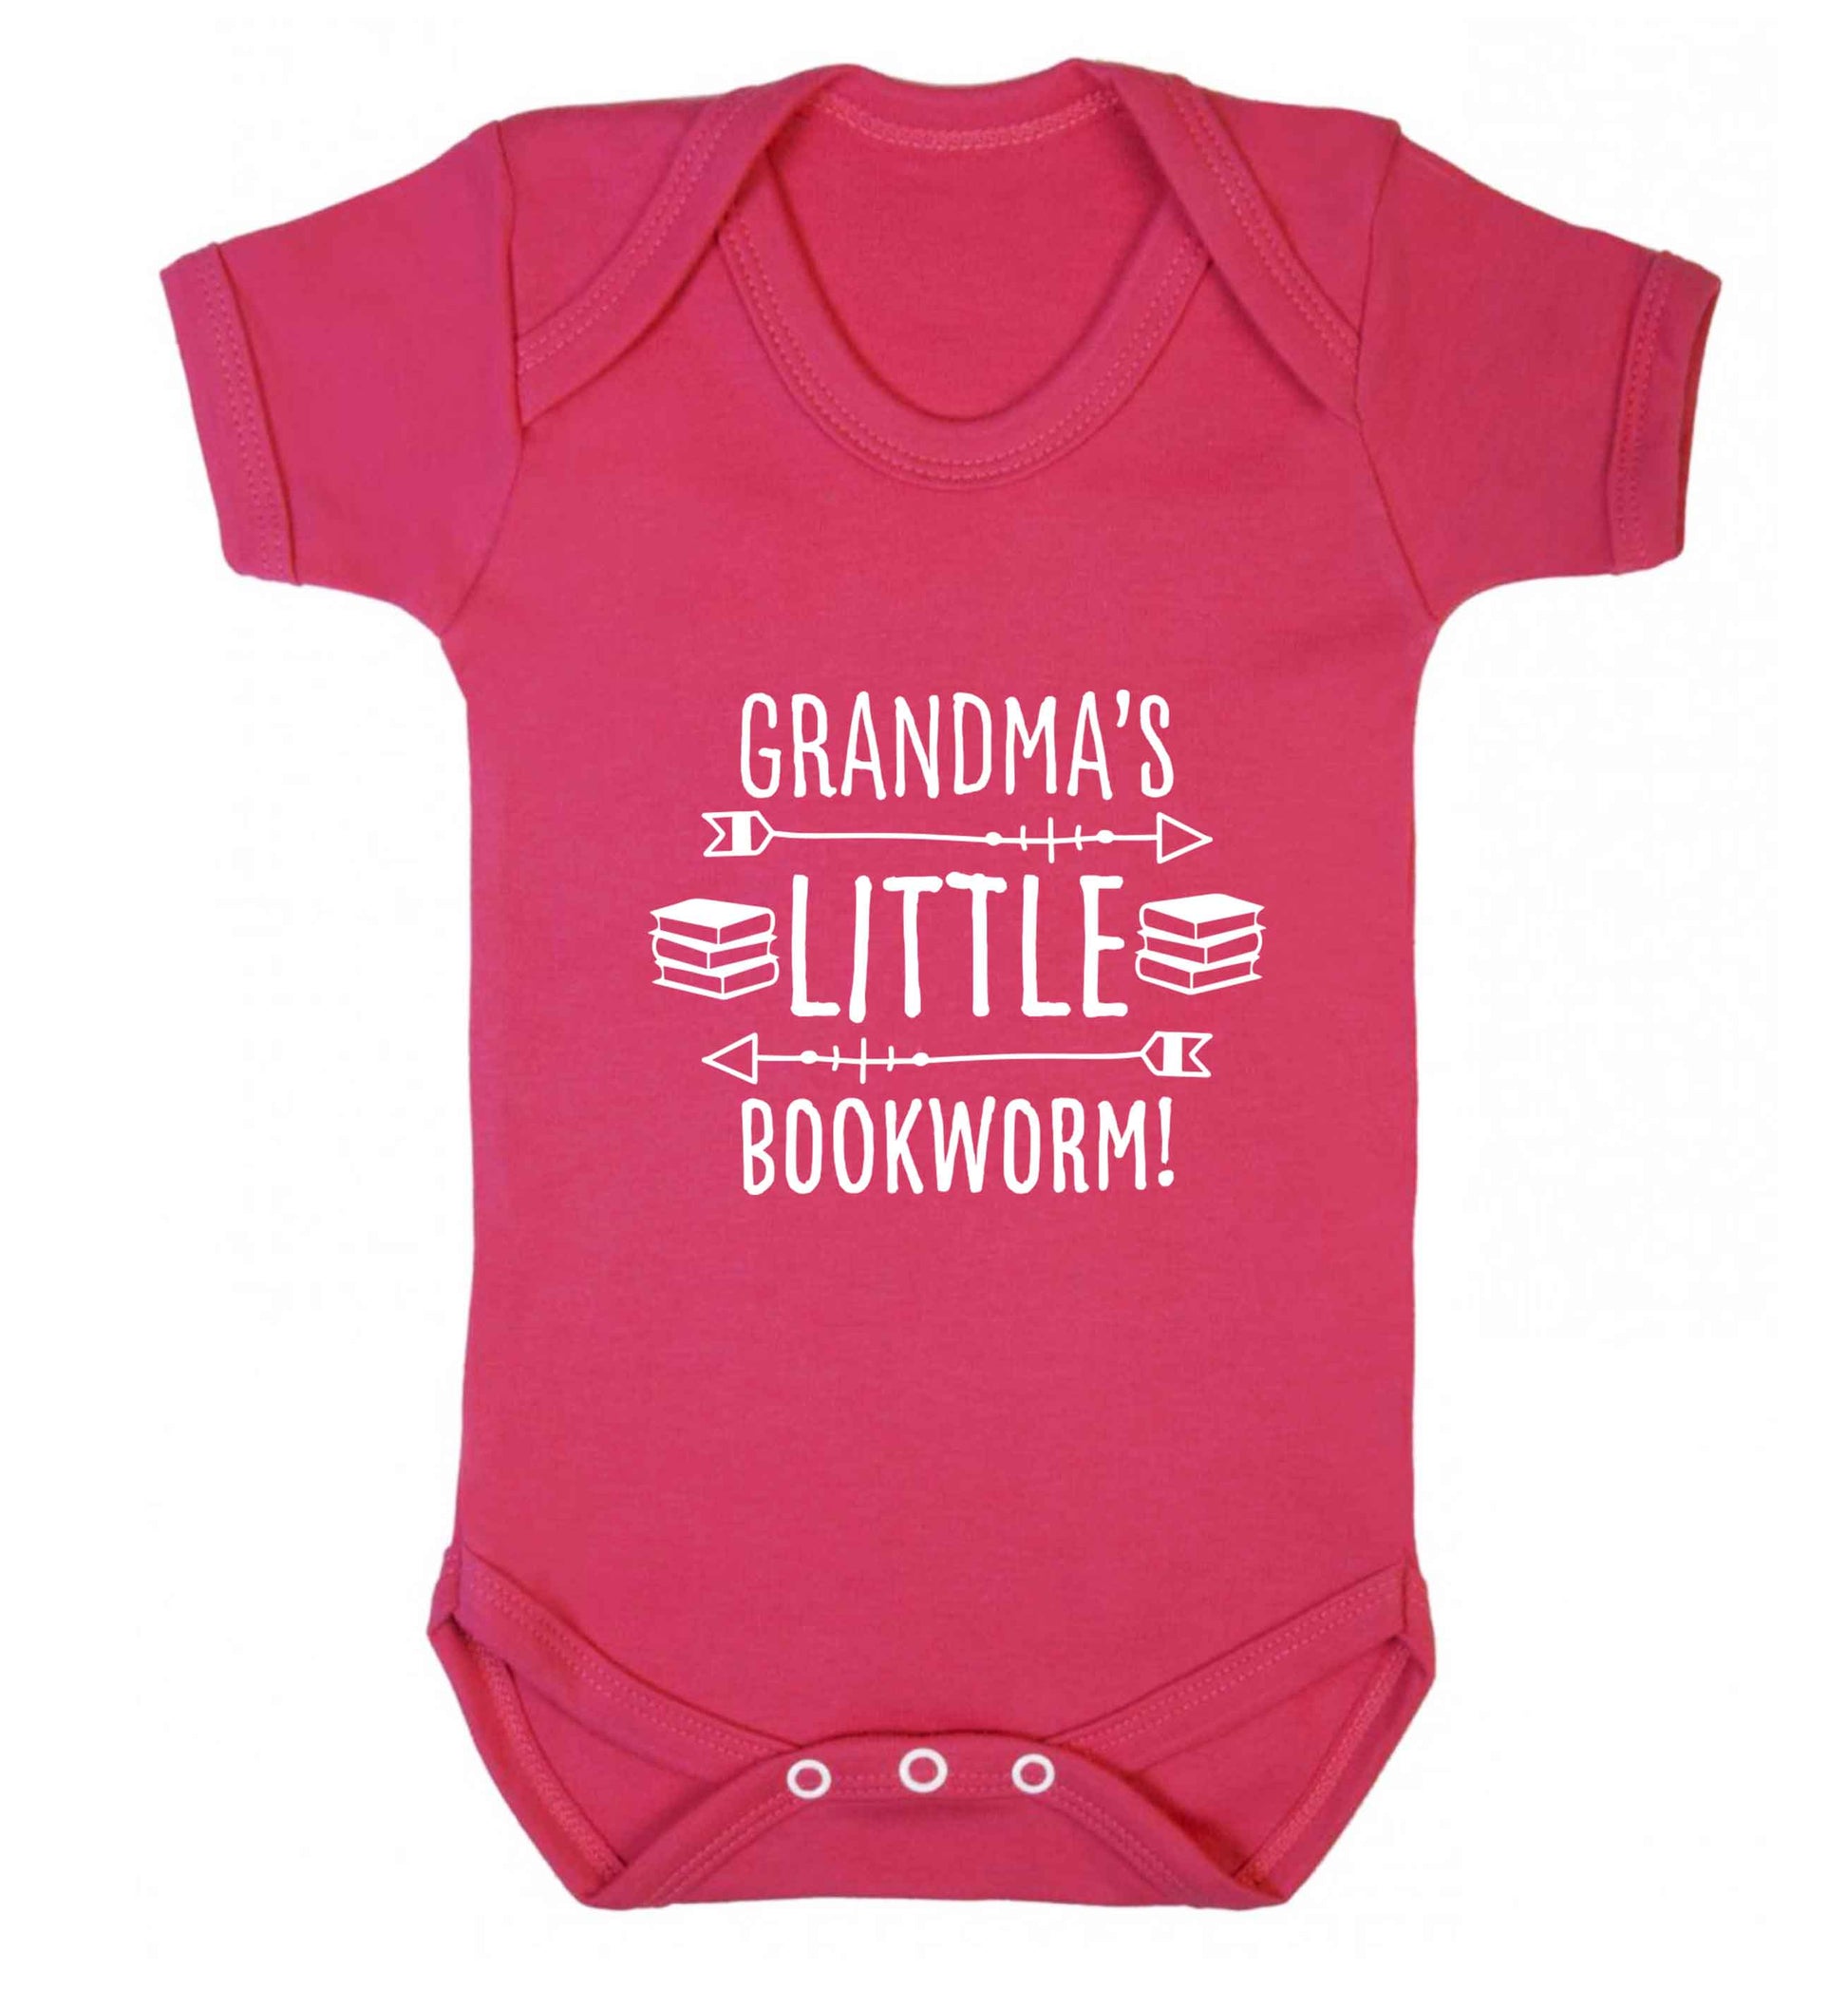 Grandma's little bookworm baby vest dark pink 18-24 months